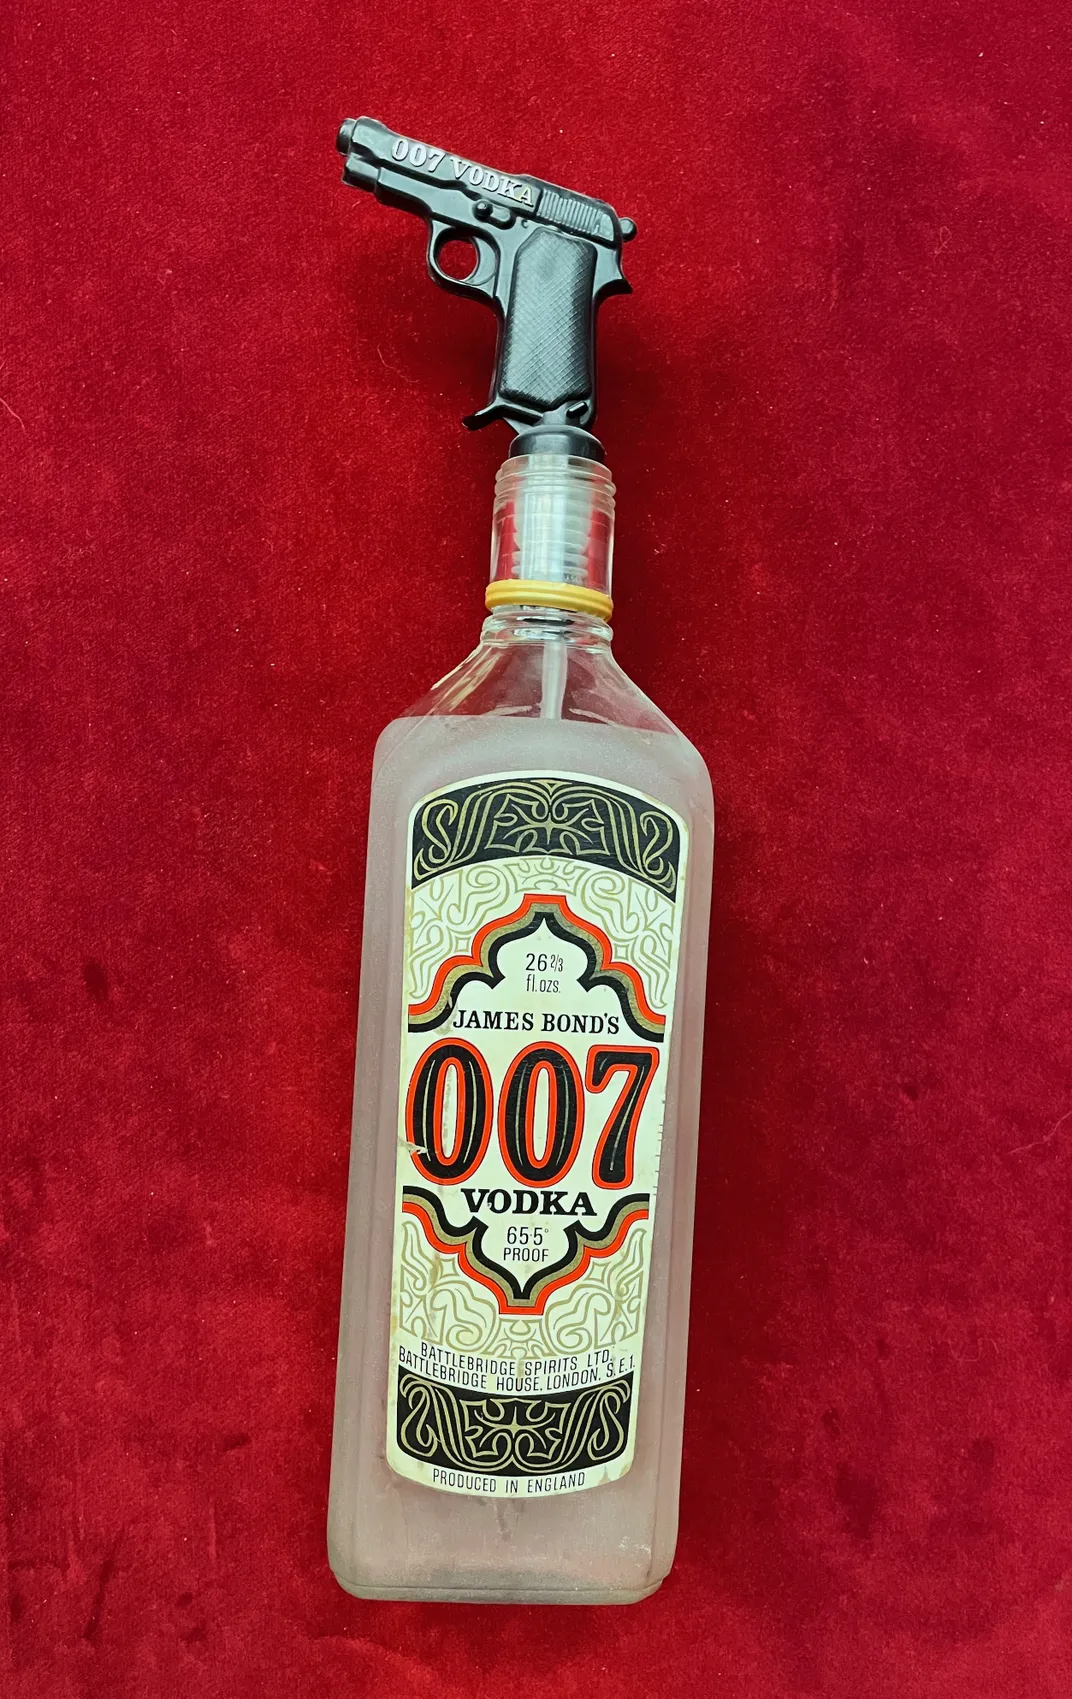 007 vodka bottle